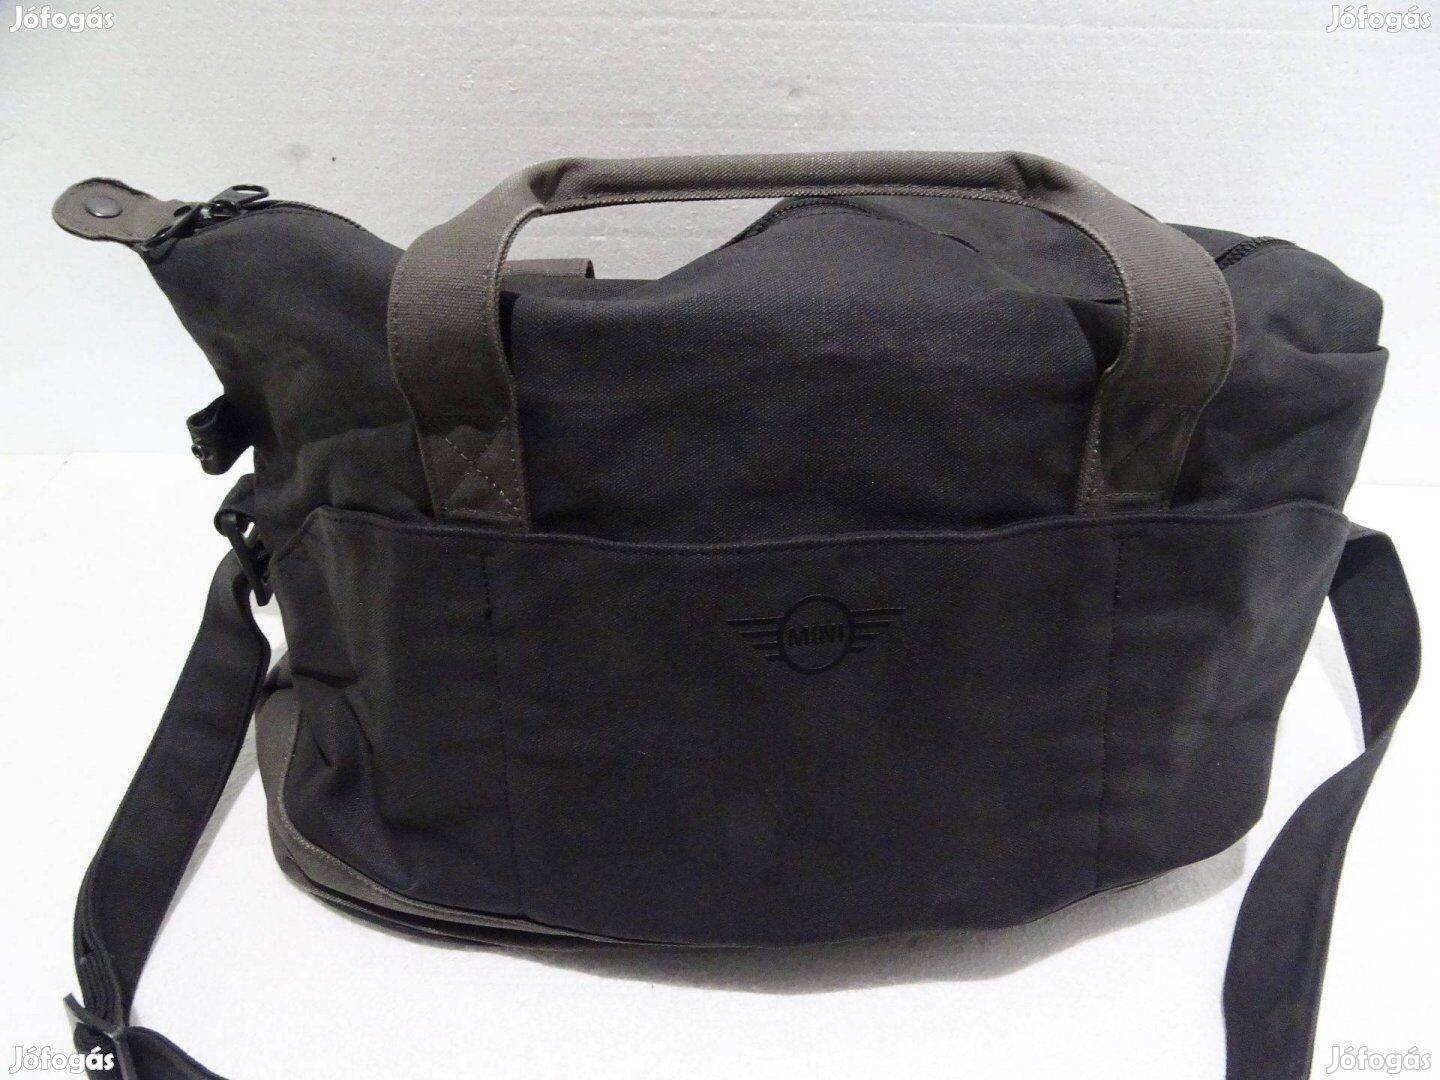 Mini Cooper táska sporttáska utazótáska kézi táska válltáska fekete